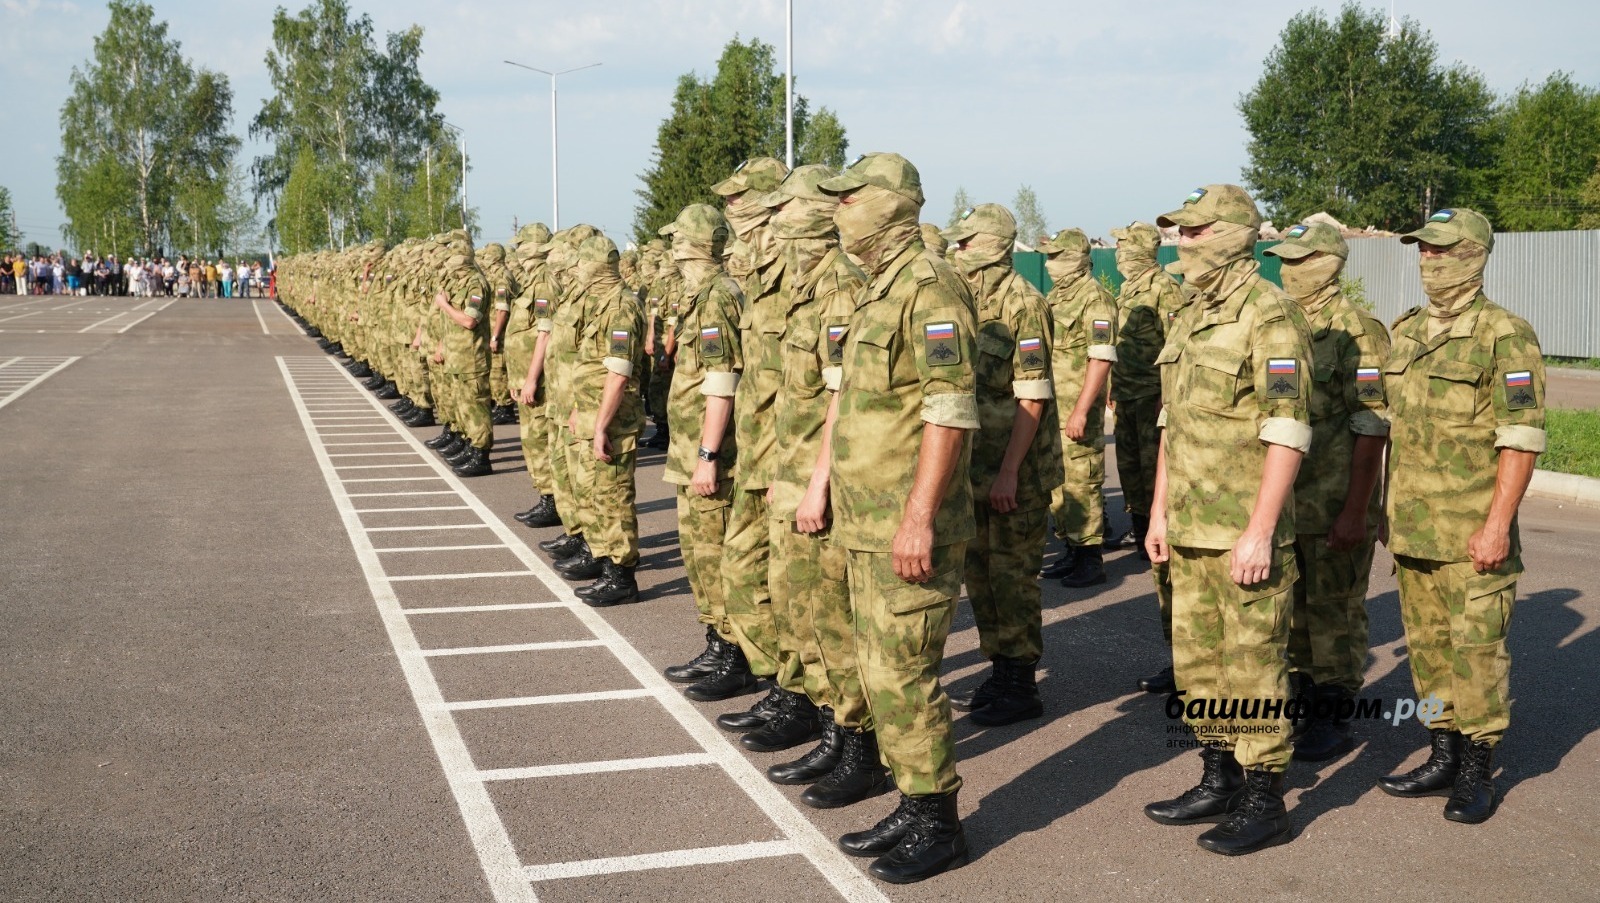 Глава Башкирии рассказал о работе медицинского взвода батальона имени Доставалова